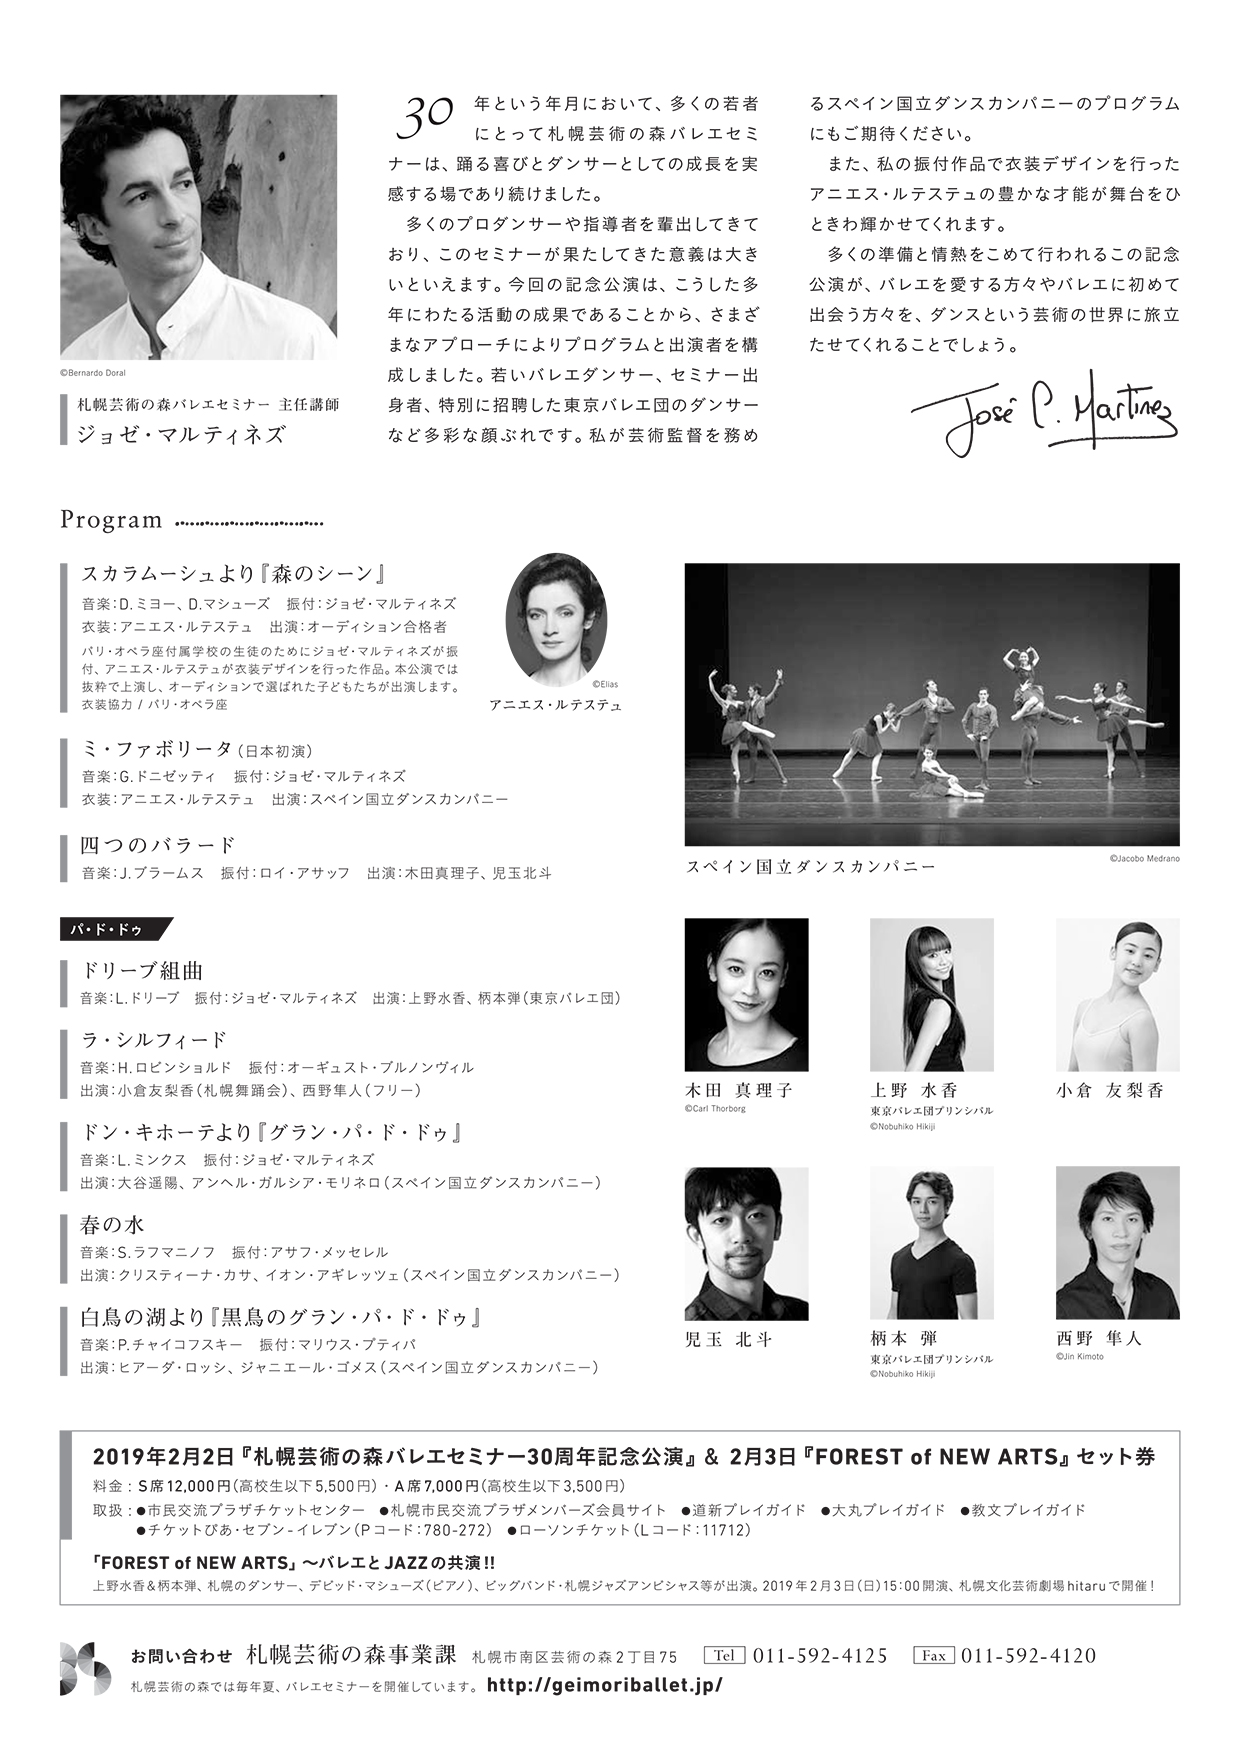 札幌芸術の森バレエセミナー30周年記念公演イメージ2枚目